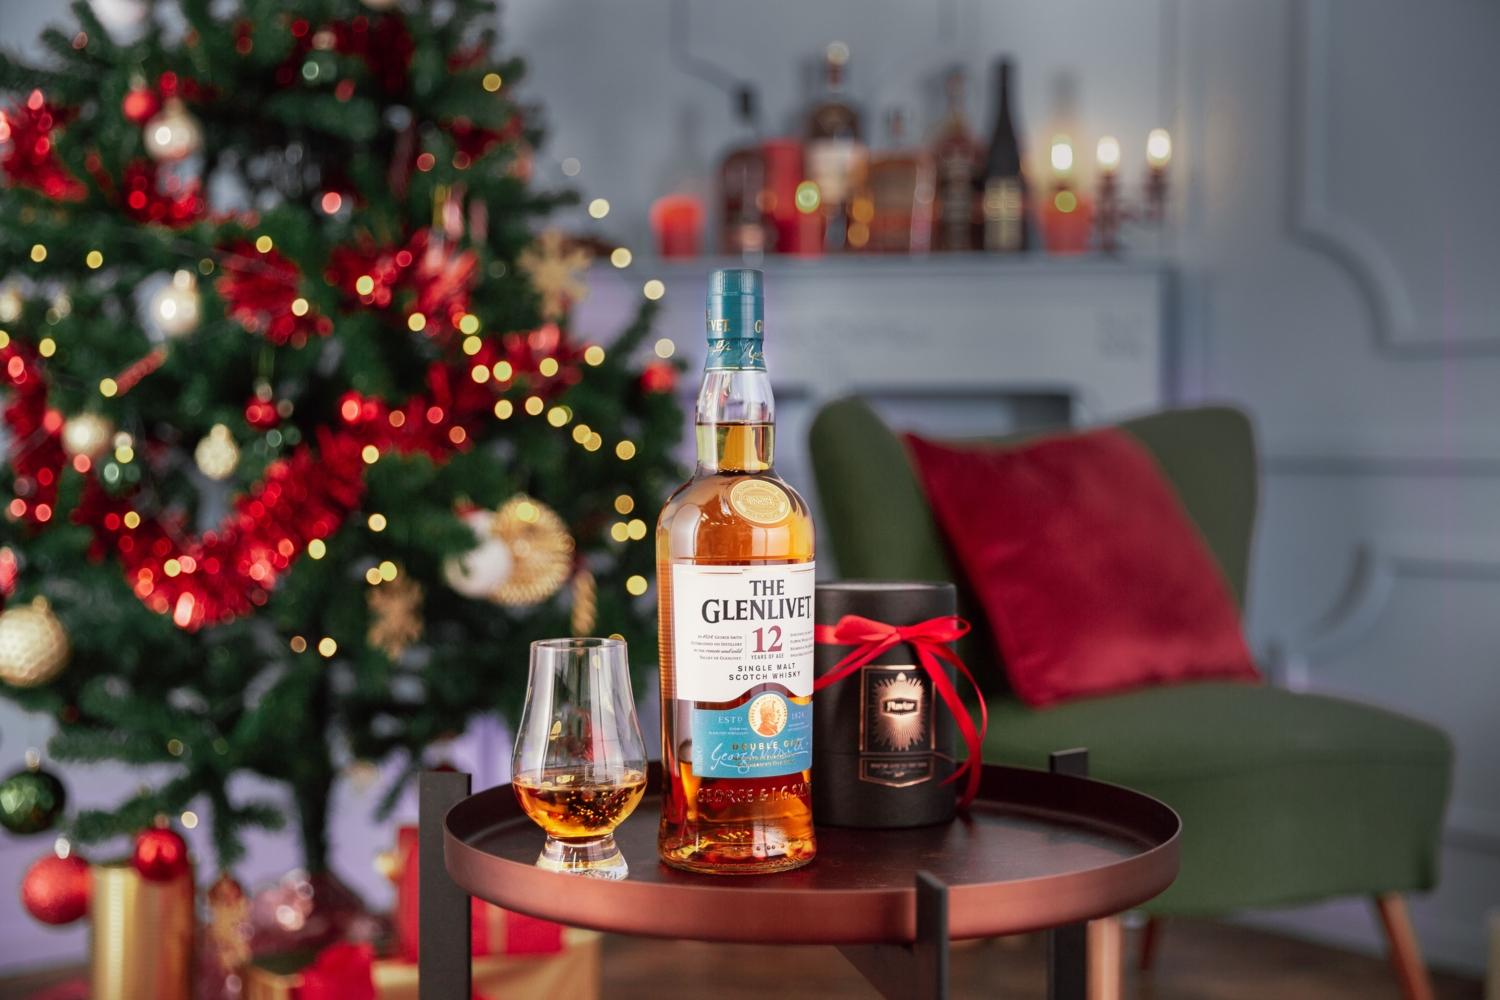 The Glenlivet 12 Single Malt Scotch Whisky